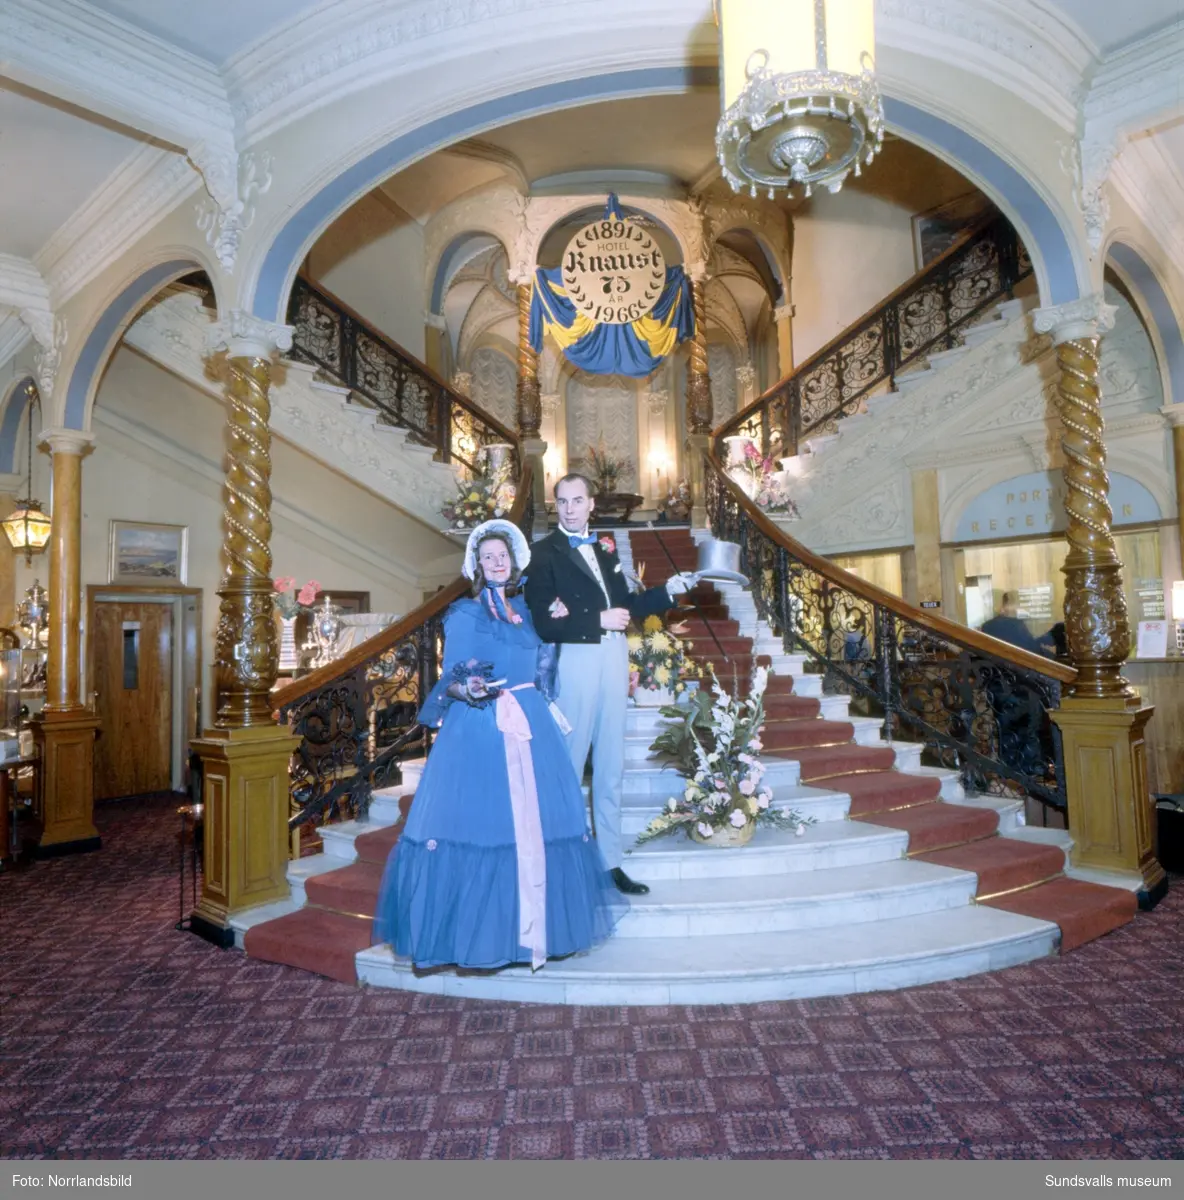 Hotell Knaust firar 75 år och i den berömda trappan poserar ett par i sekelskifteskläder.